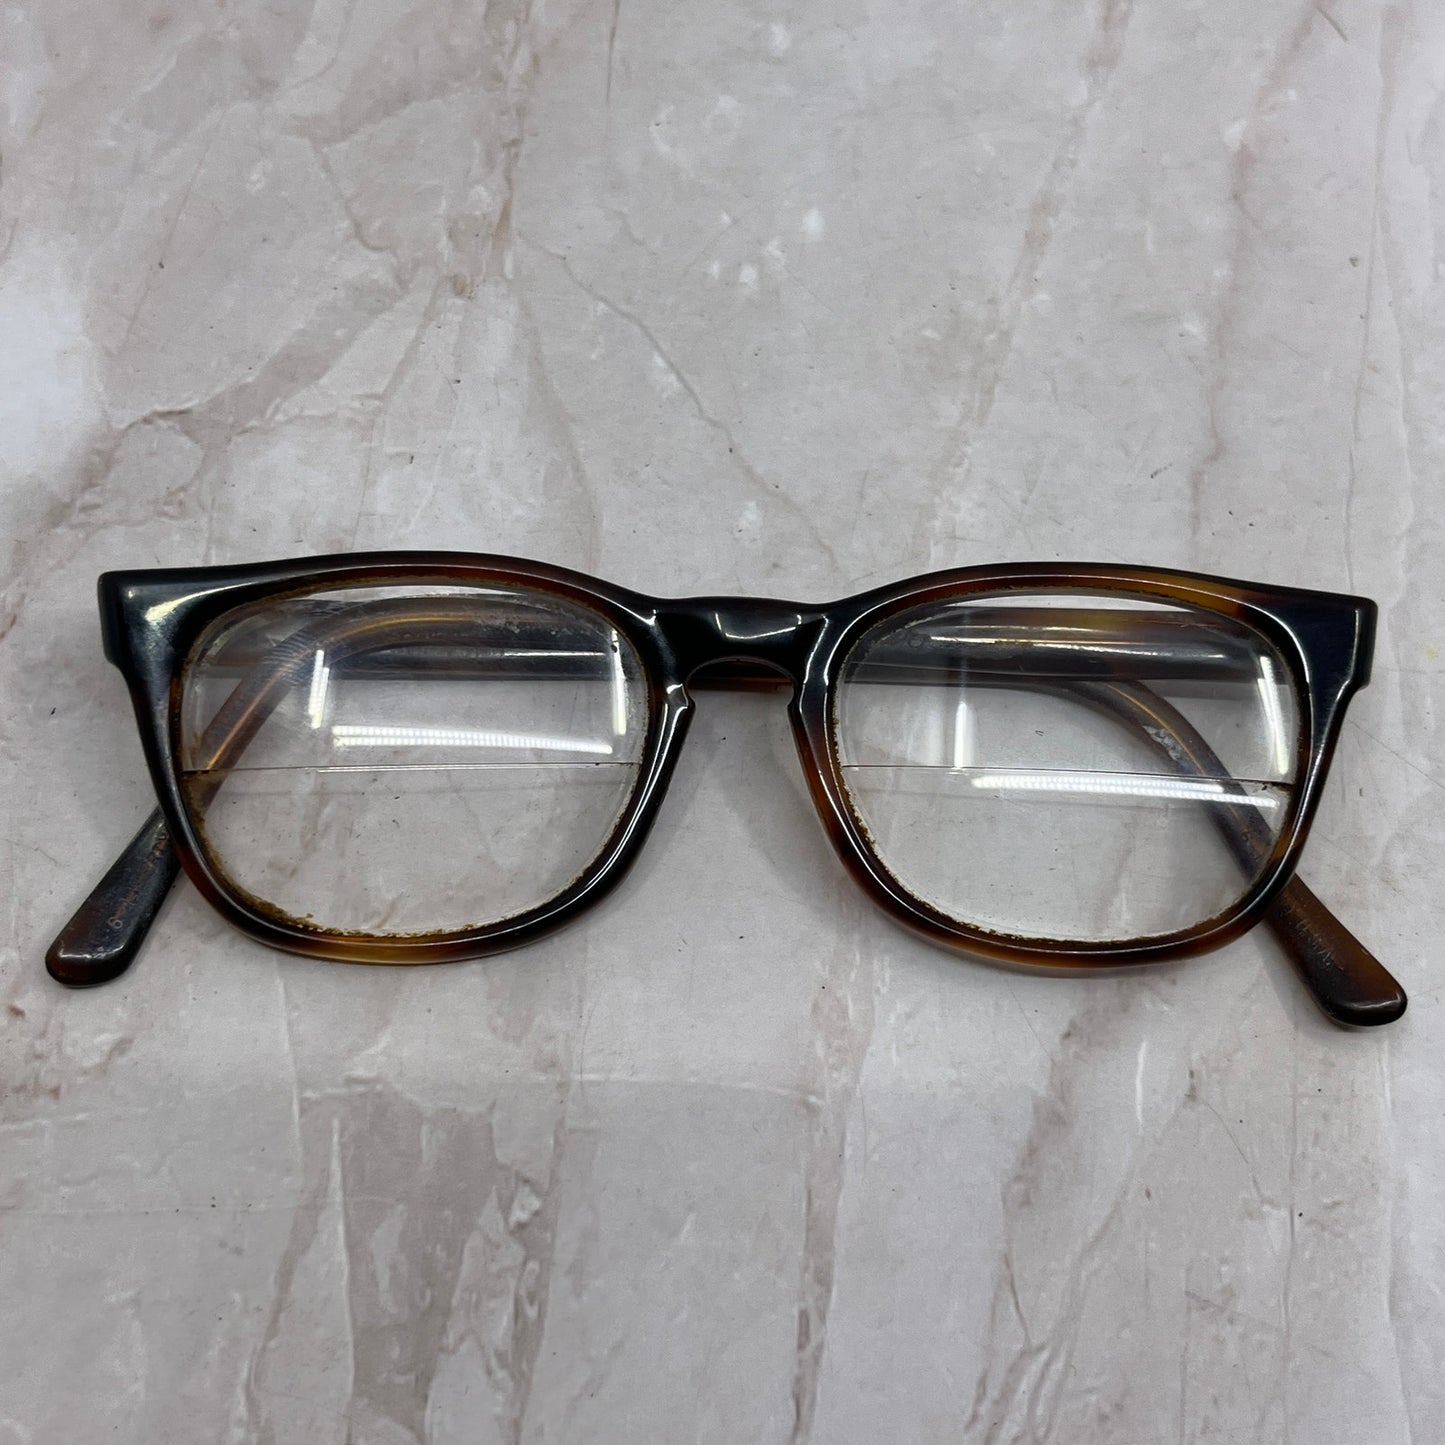 Retro Horn Rim Tortoise Shell Acrylic Sunglasses Eyeglasses Frames TG7-G3-4